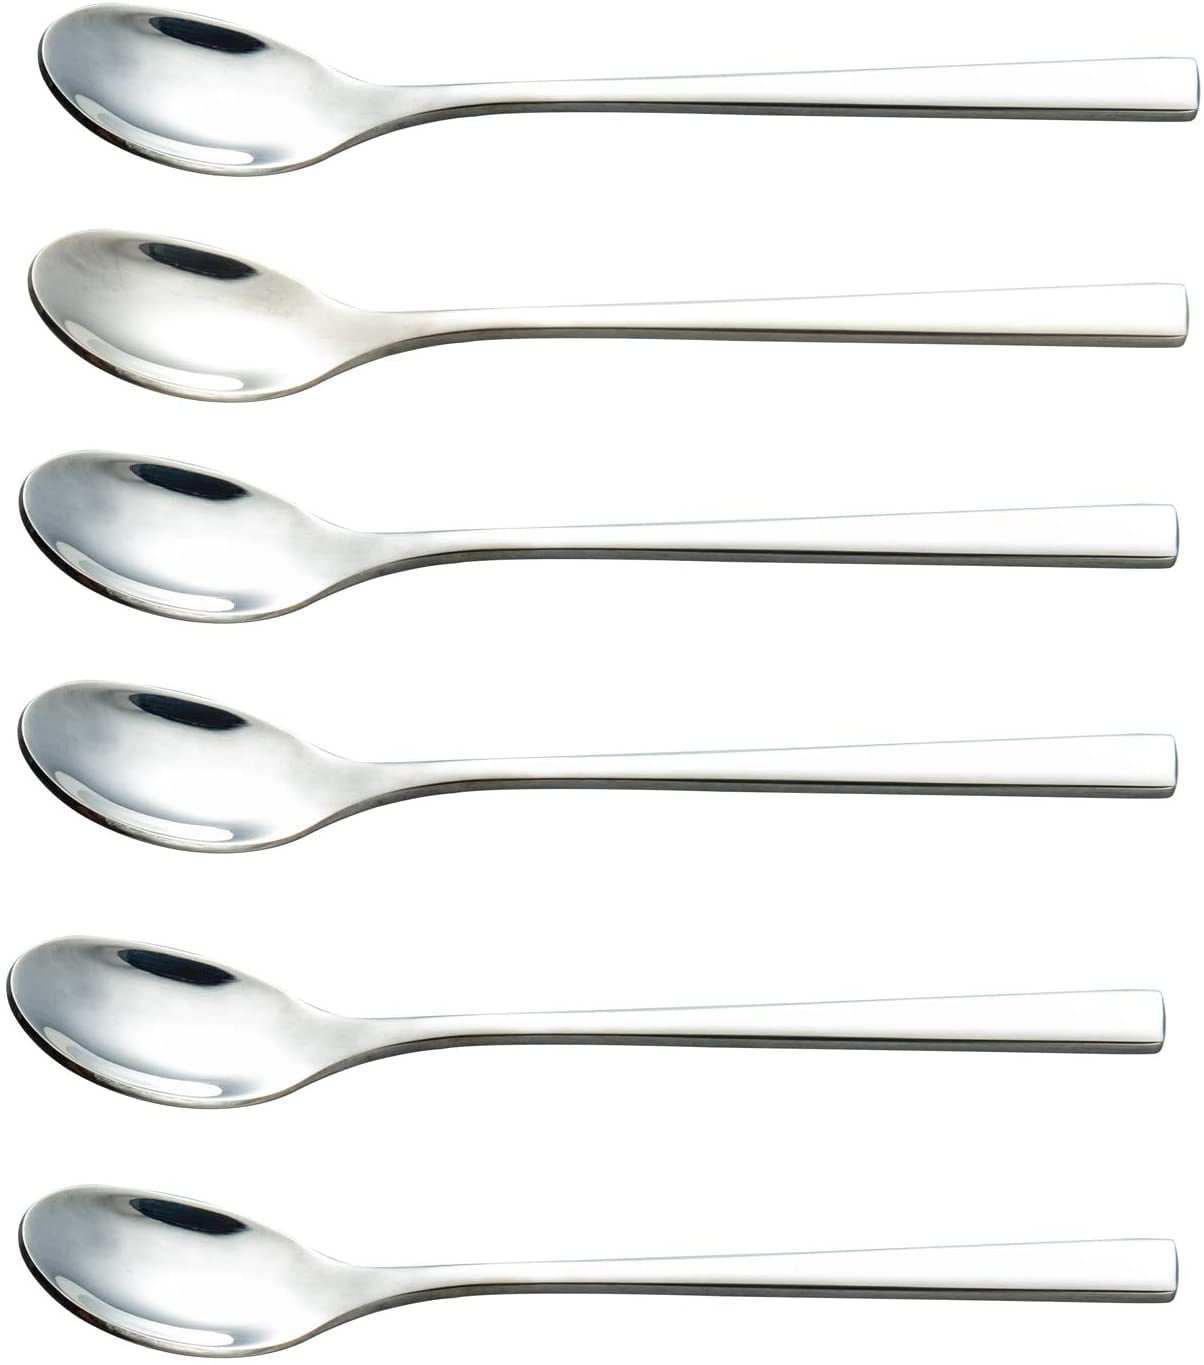 Buyer Star 12 Pieces Black Teaspoons 5.5-Inch Mini Coffee Spoons Stainless Steel Sugar Demitasse Espresso Spoons 